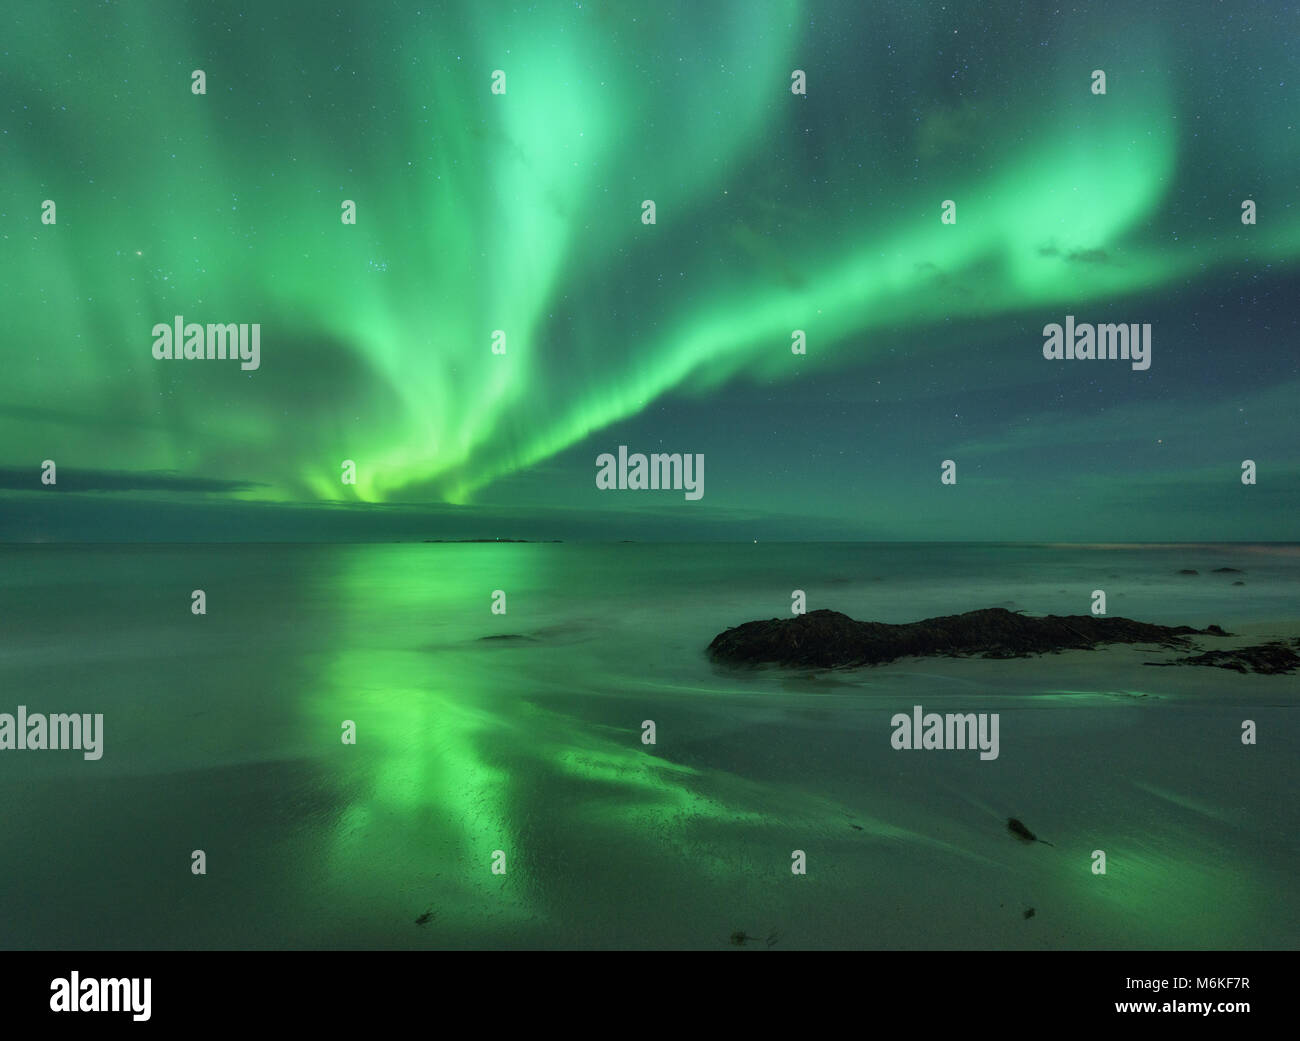 Aurora auf dem Meer. Nordlicht in Lofoten Inseln, Norwegen. Sternenhimmel mit Polarlichter. Nacht Landschaft mit Aurora, Meer mit fliessend Wasser und s Stockfoto